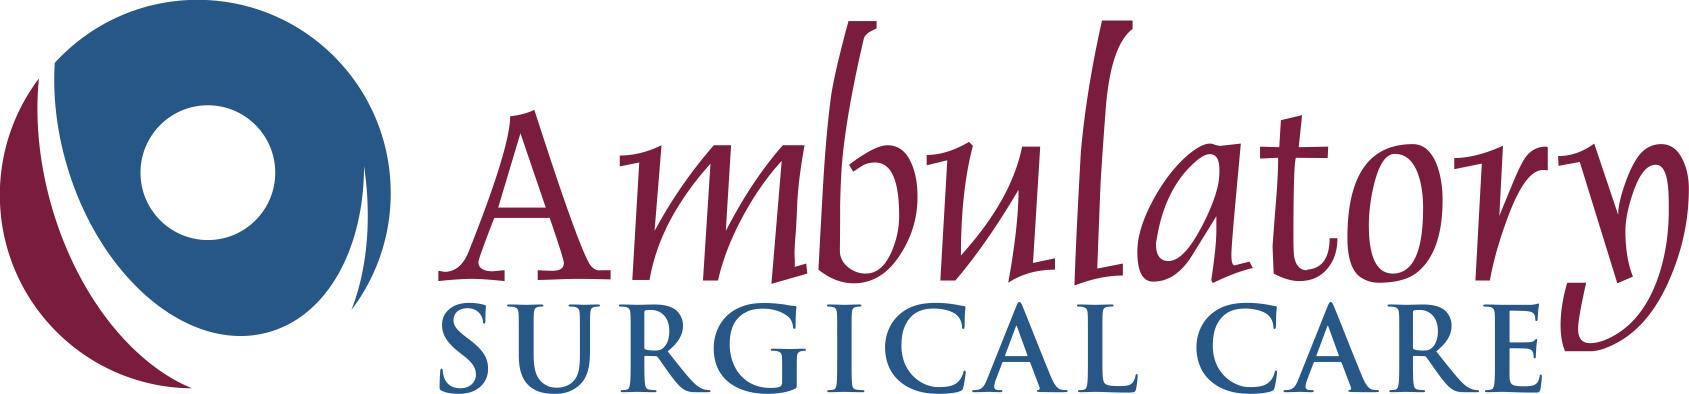 Ambulatory Surgical Care